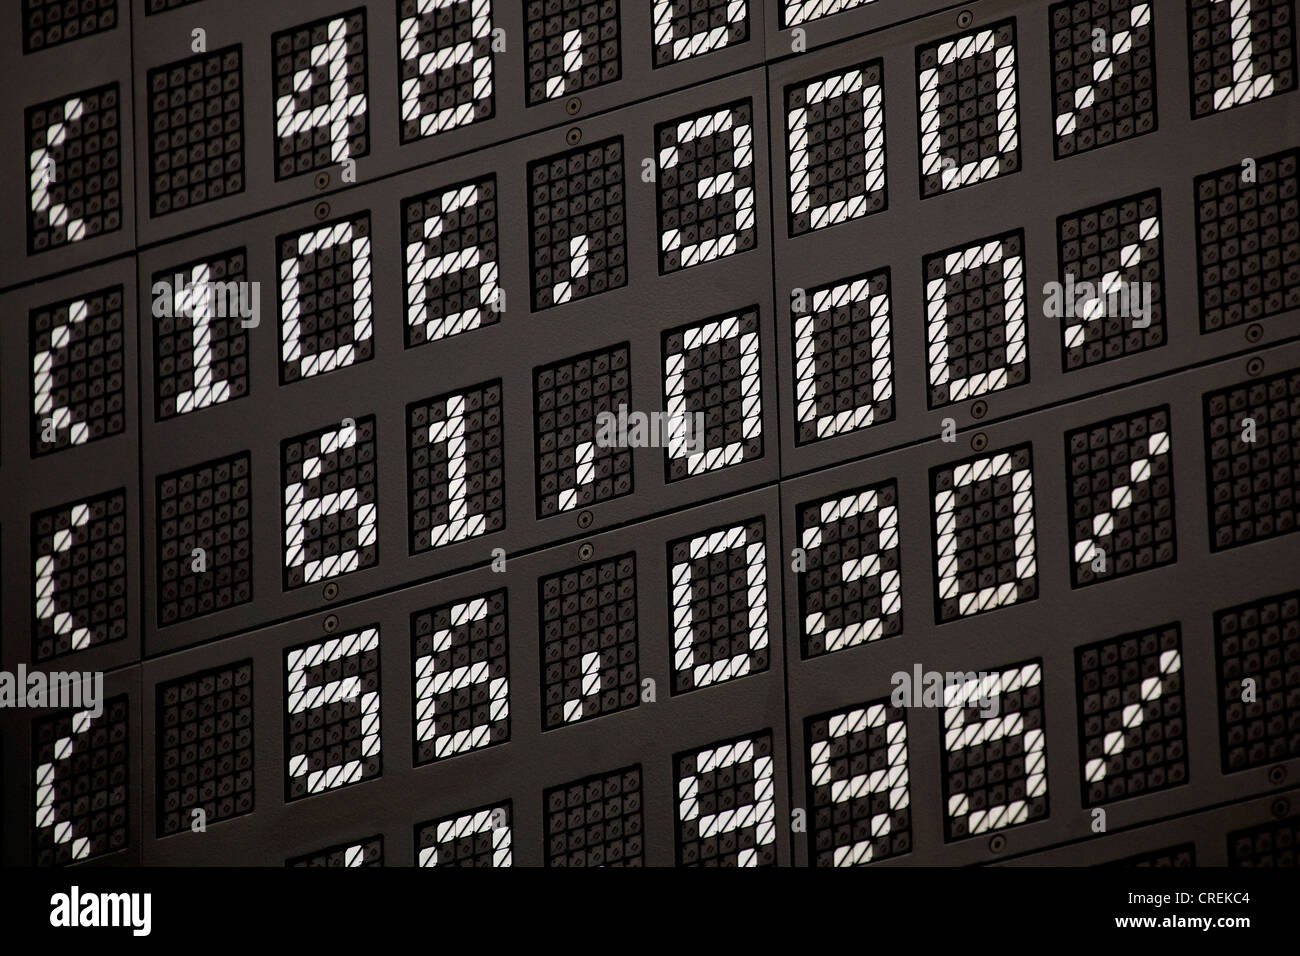 Curso junta del índice bursátil DAX en el piso de operaciones de la Bolsa de Francfort, Deutsche Boerse AG Foto de stock